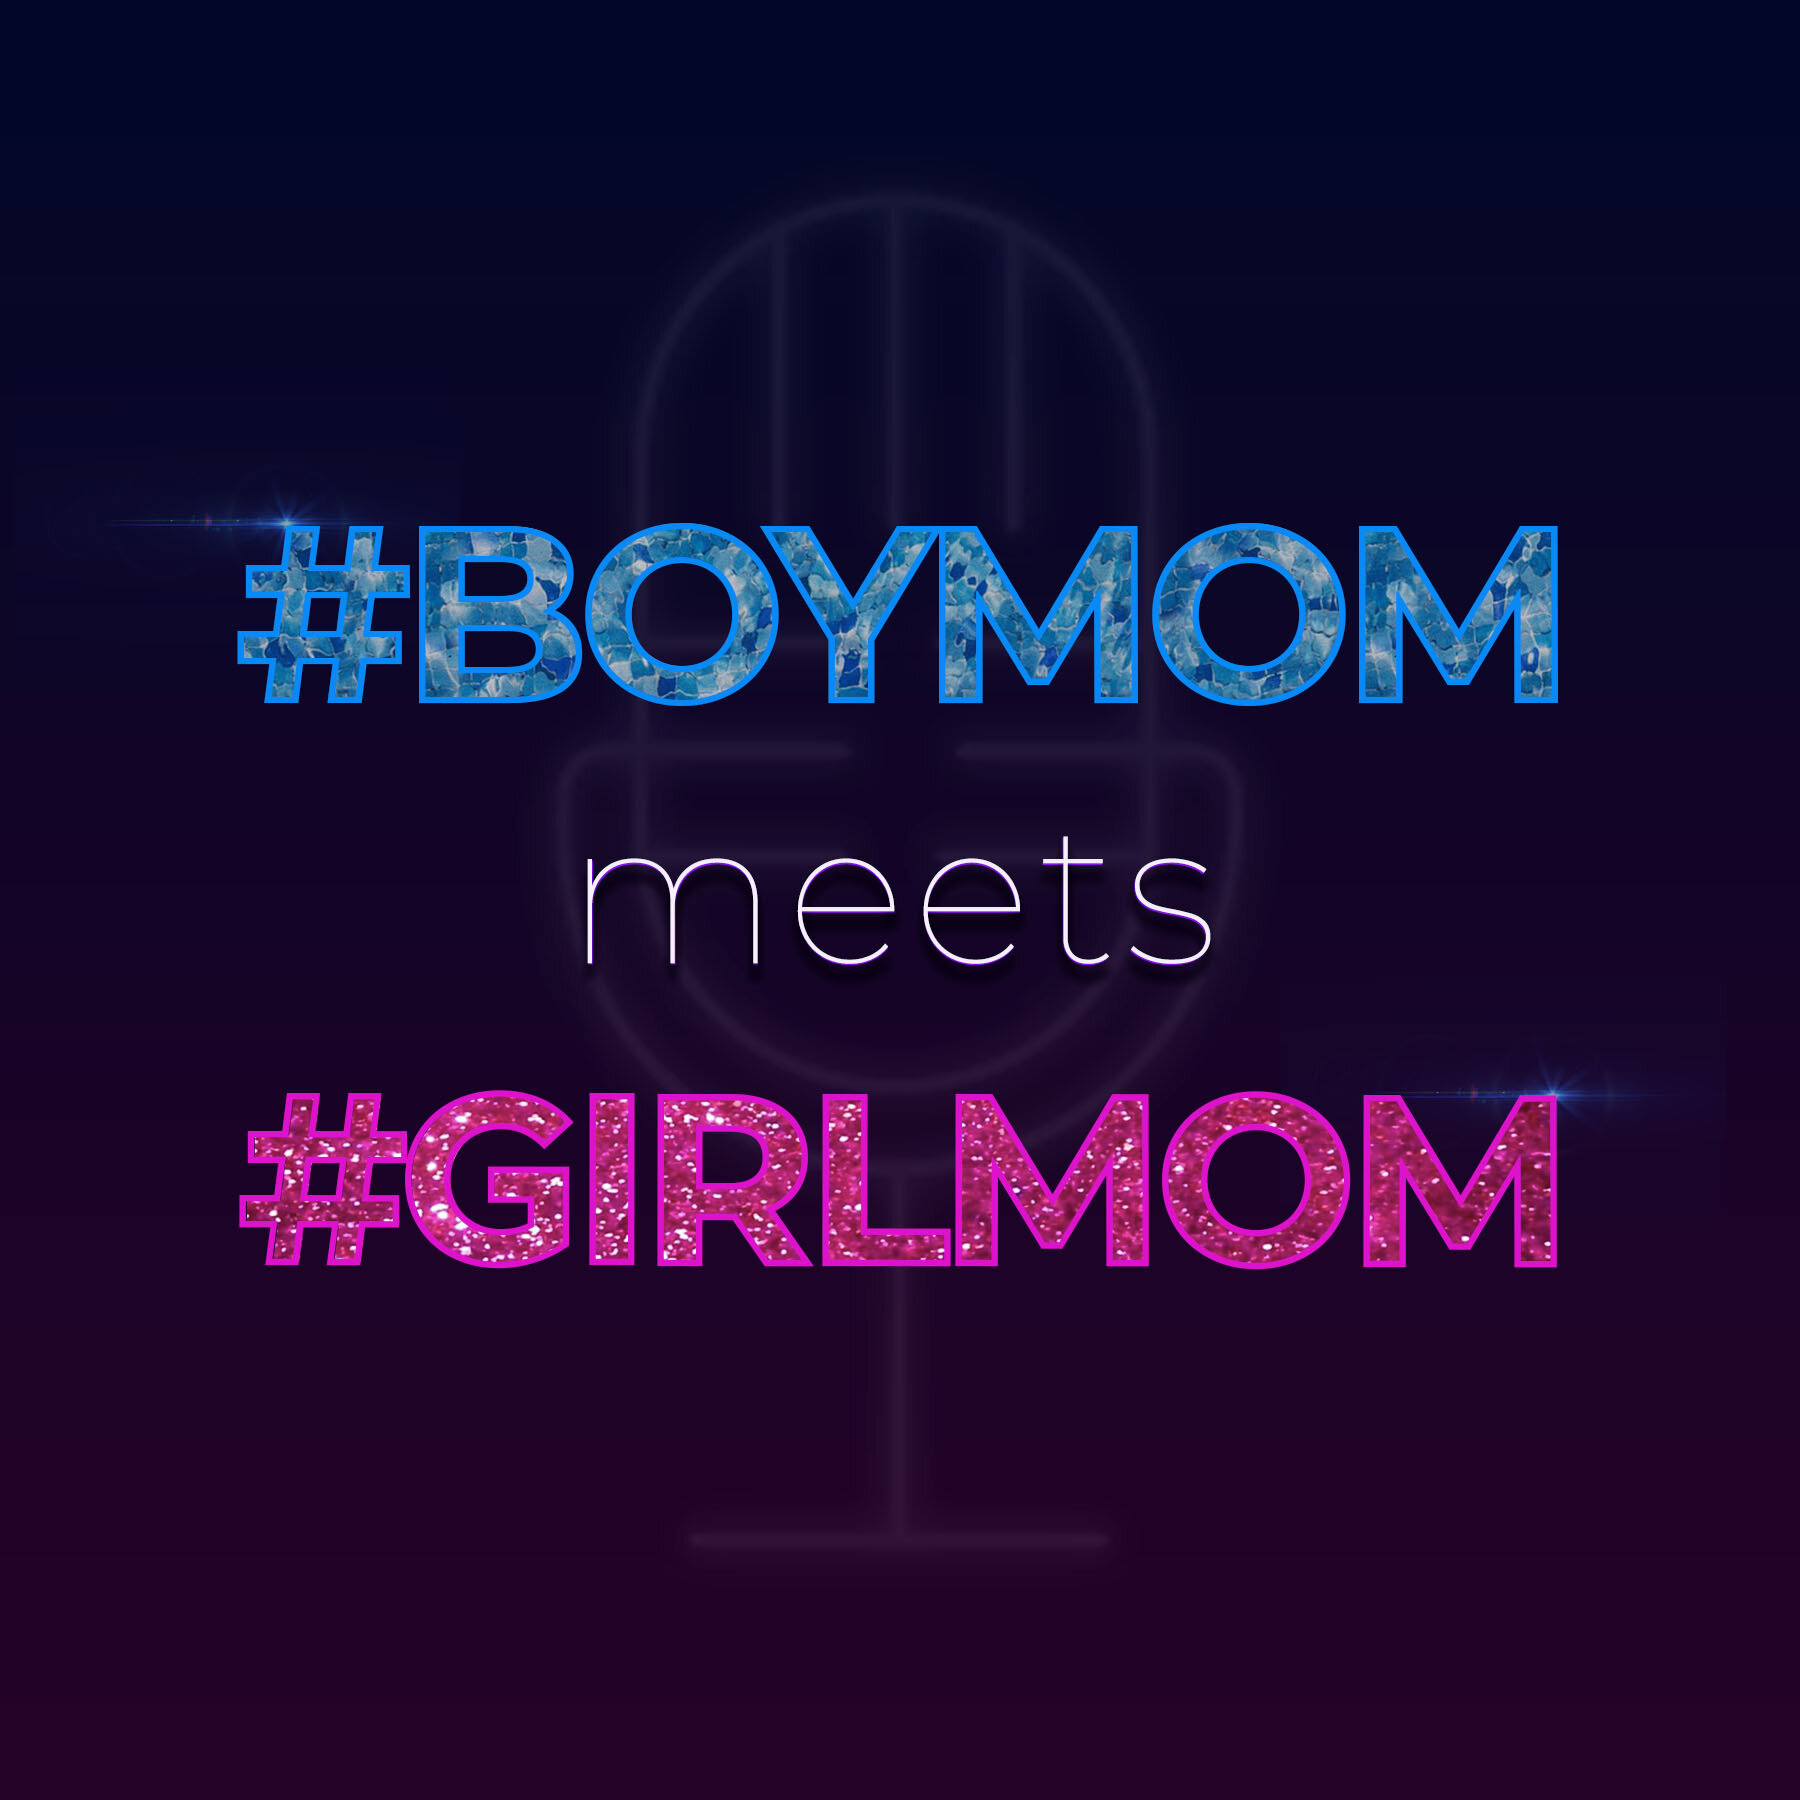  #BOYMOM, Boy Mom